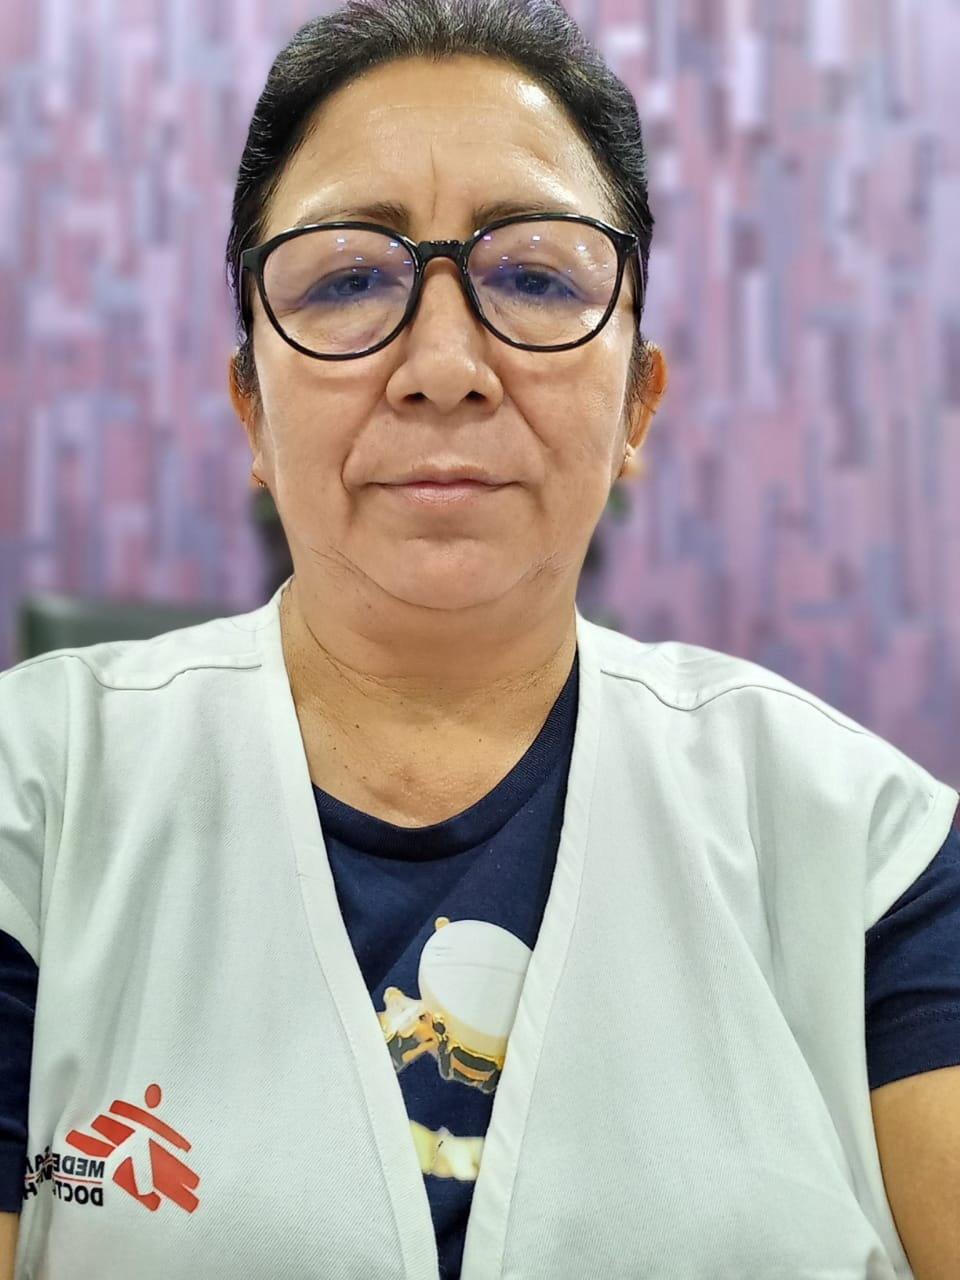 "Vi befinner oss i en mycket svår och kritisk situation" säger Mabel Morales som är medicinsk koordinator för Läkare utan gränser i Bombay.